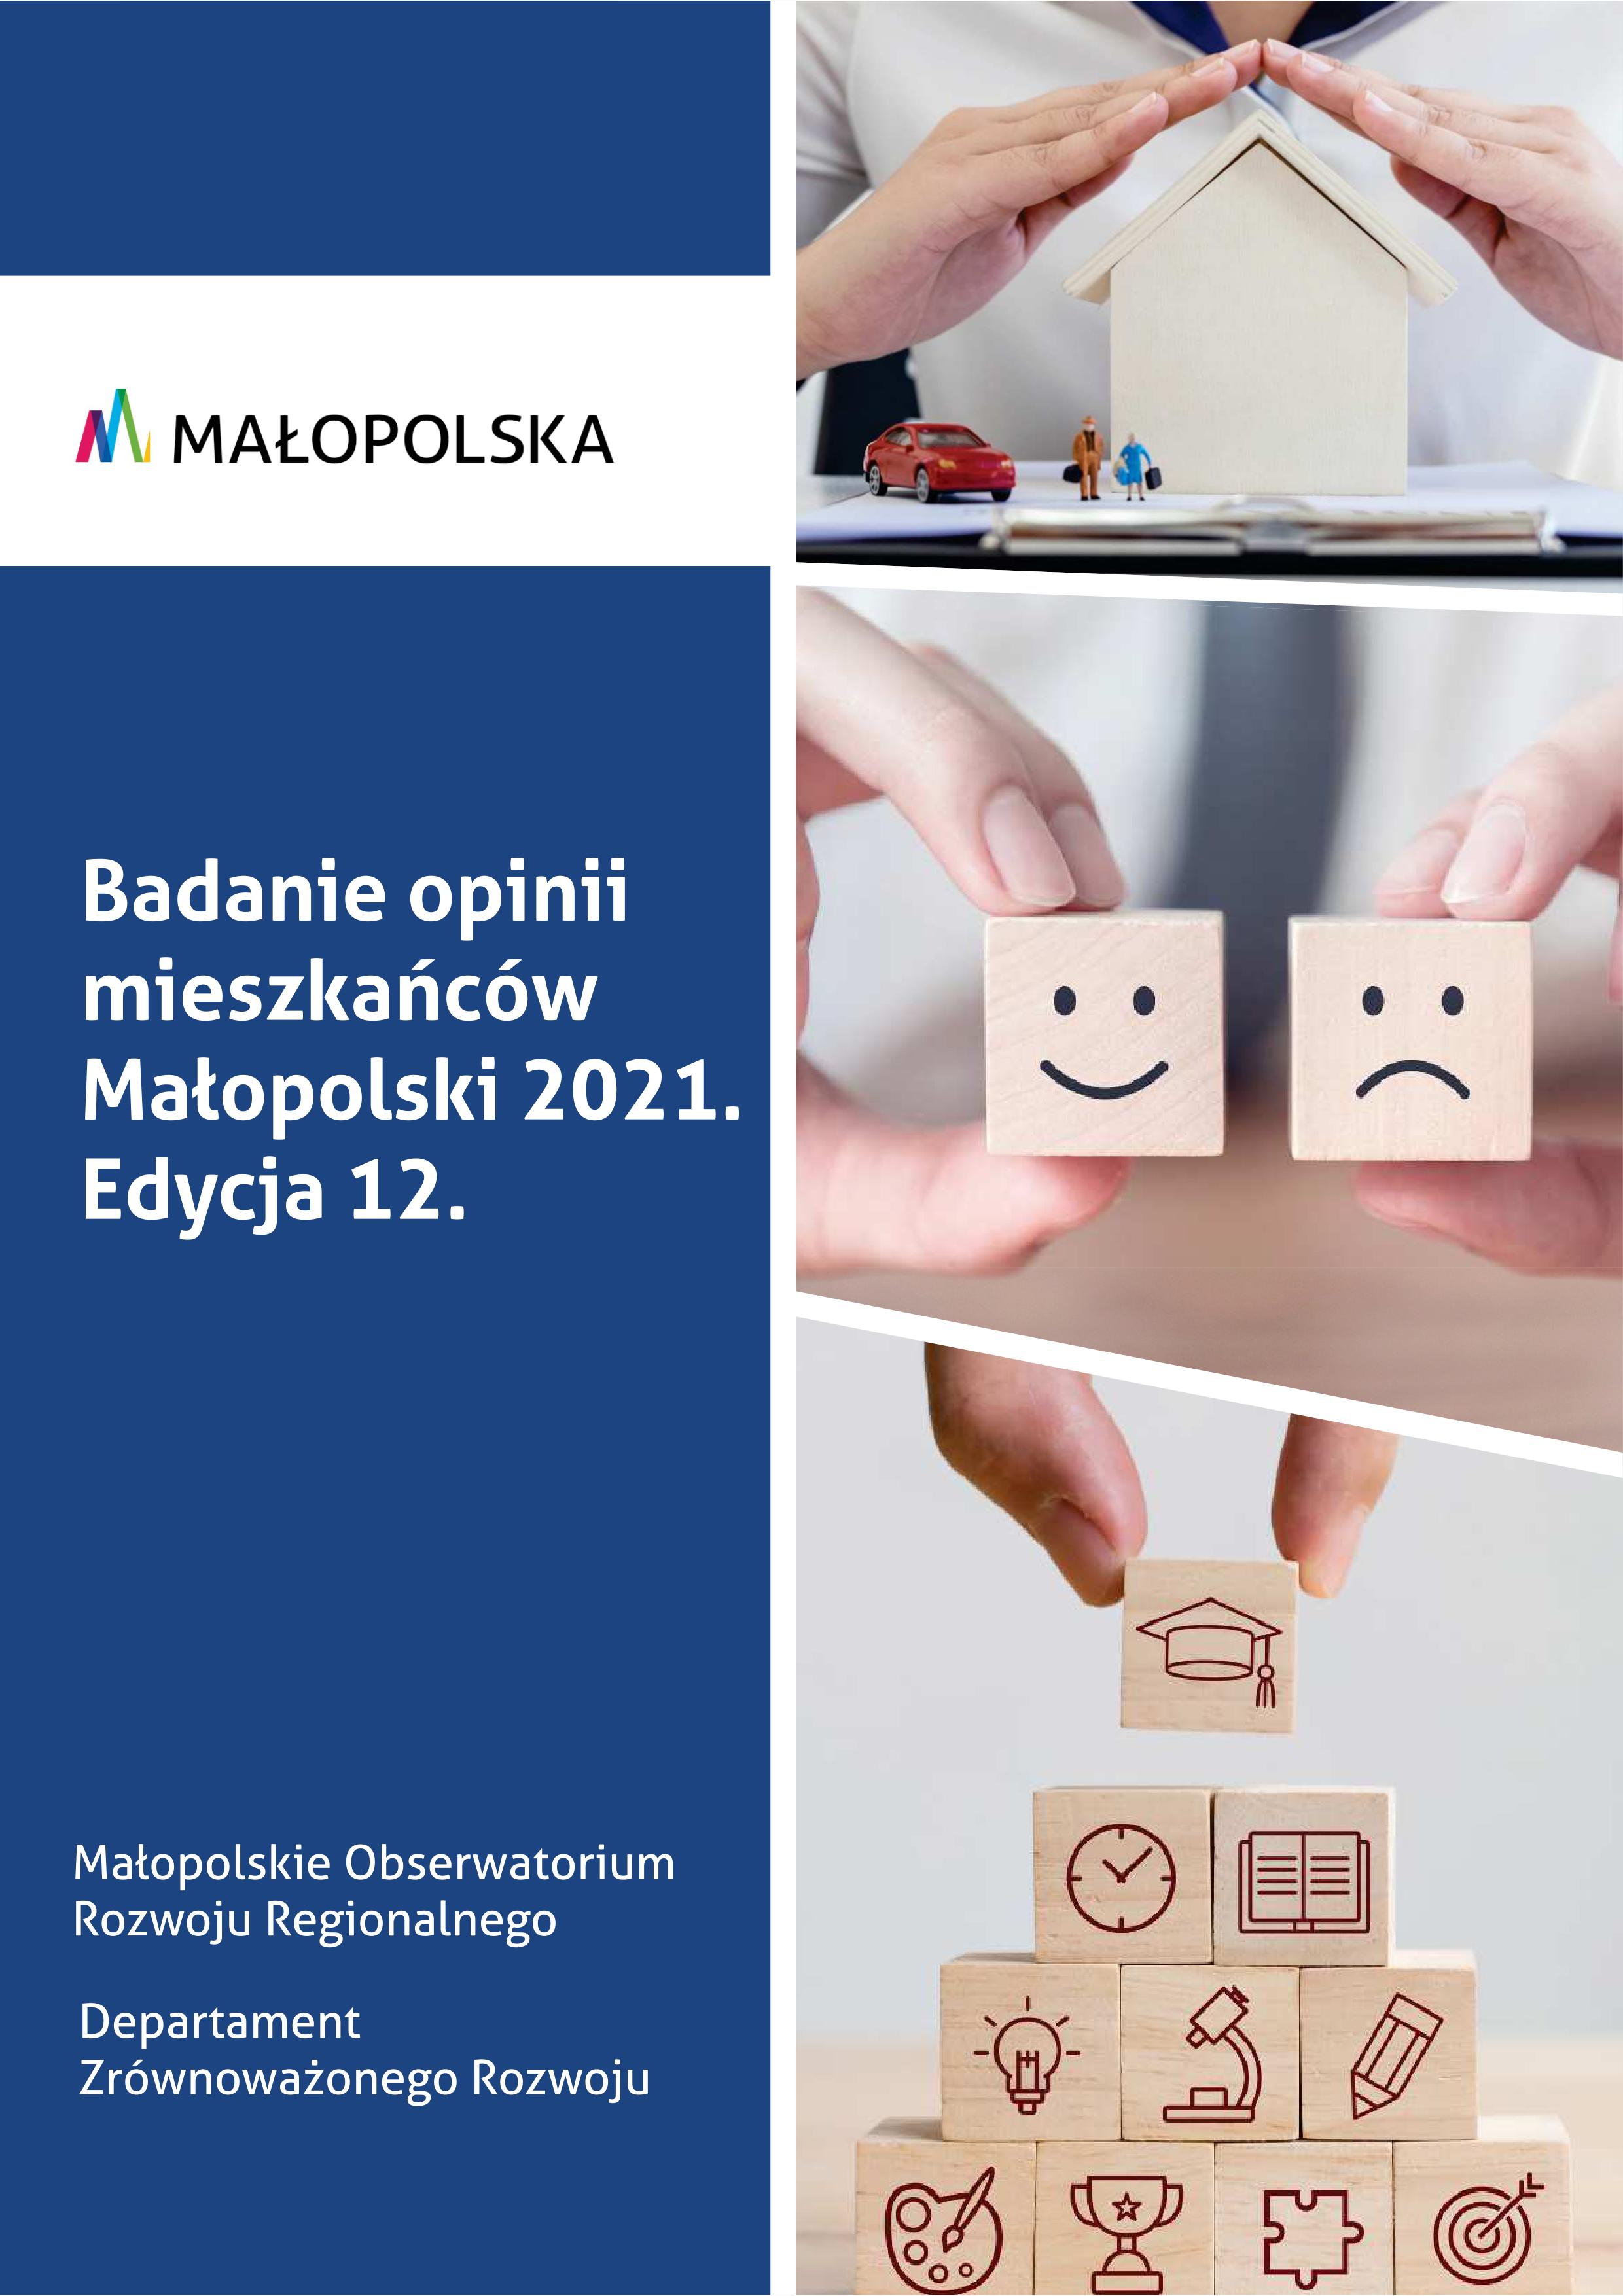 Badanie opinii mieszkańców Małopolski 2021. Edycja 12